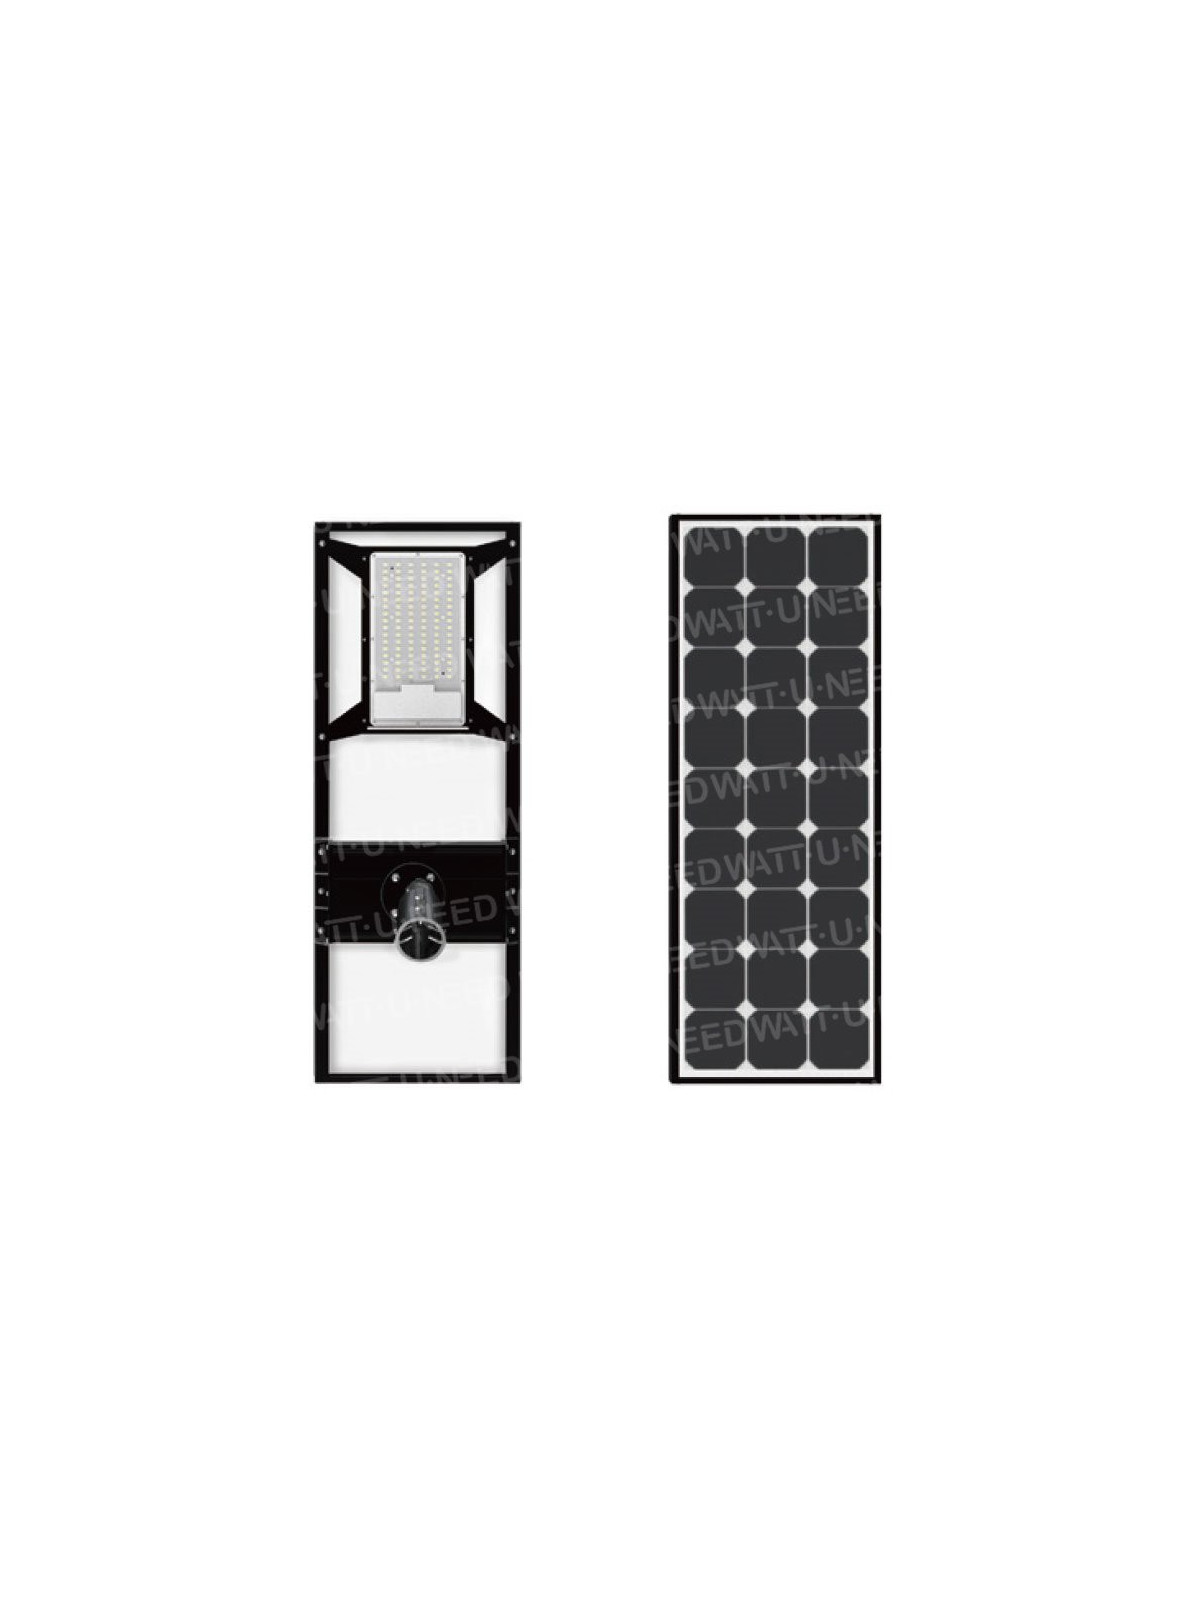 Solar floor lamp - ShootingStar standalone LED